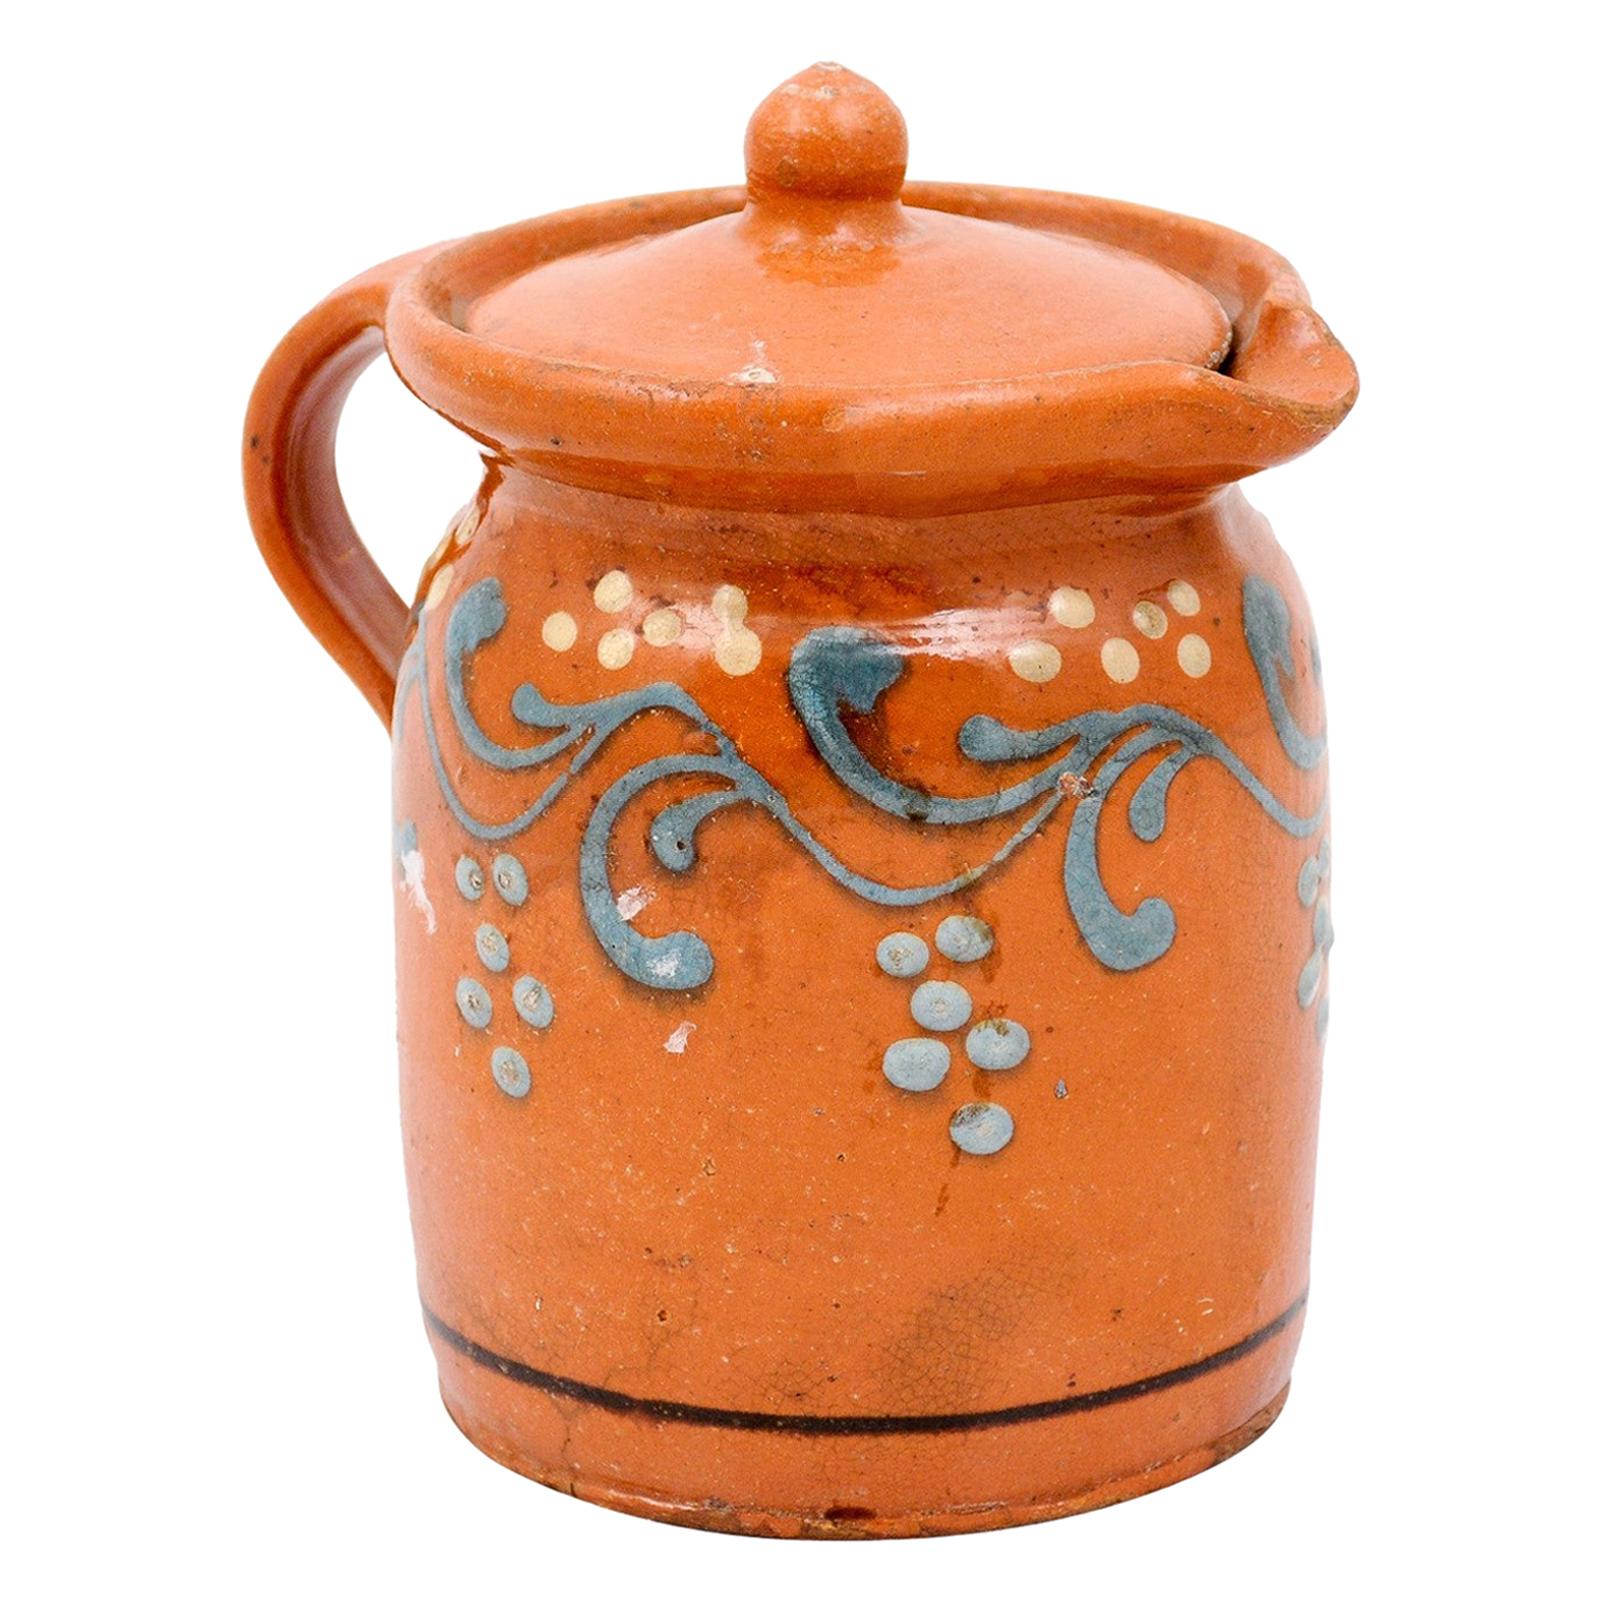 Keramikkrug aus dem 19. Jahrhundert mit orangefarbener und blauer Glasur und Blattmotiv